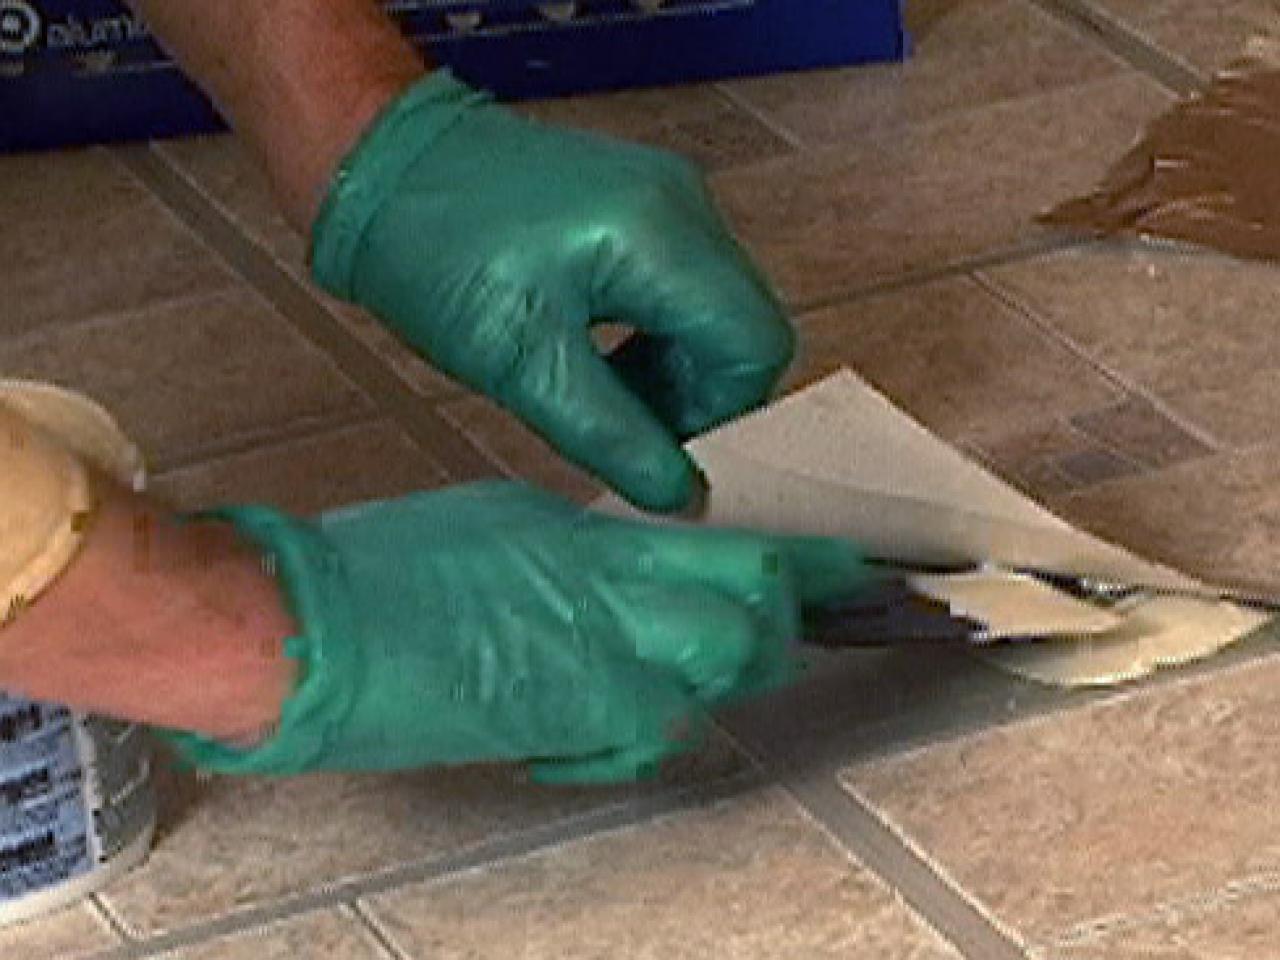 How To Fix Curling Vinyl Floor Tile, Vinyl Floor Tile Repair